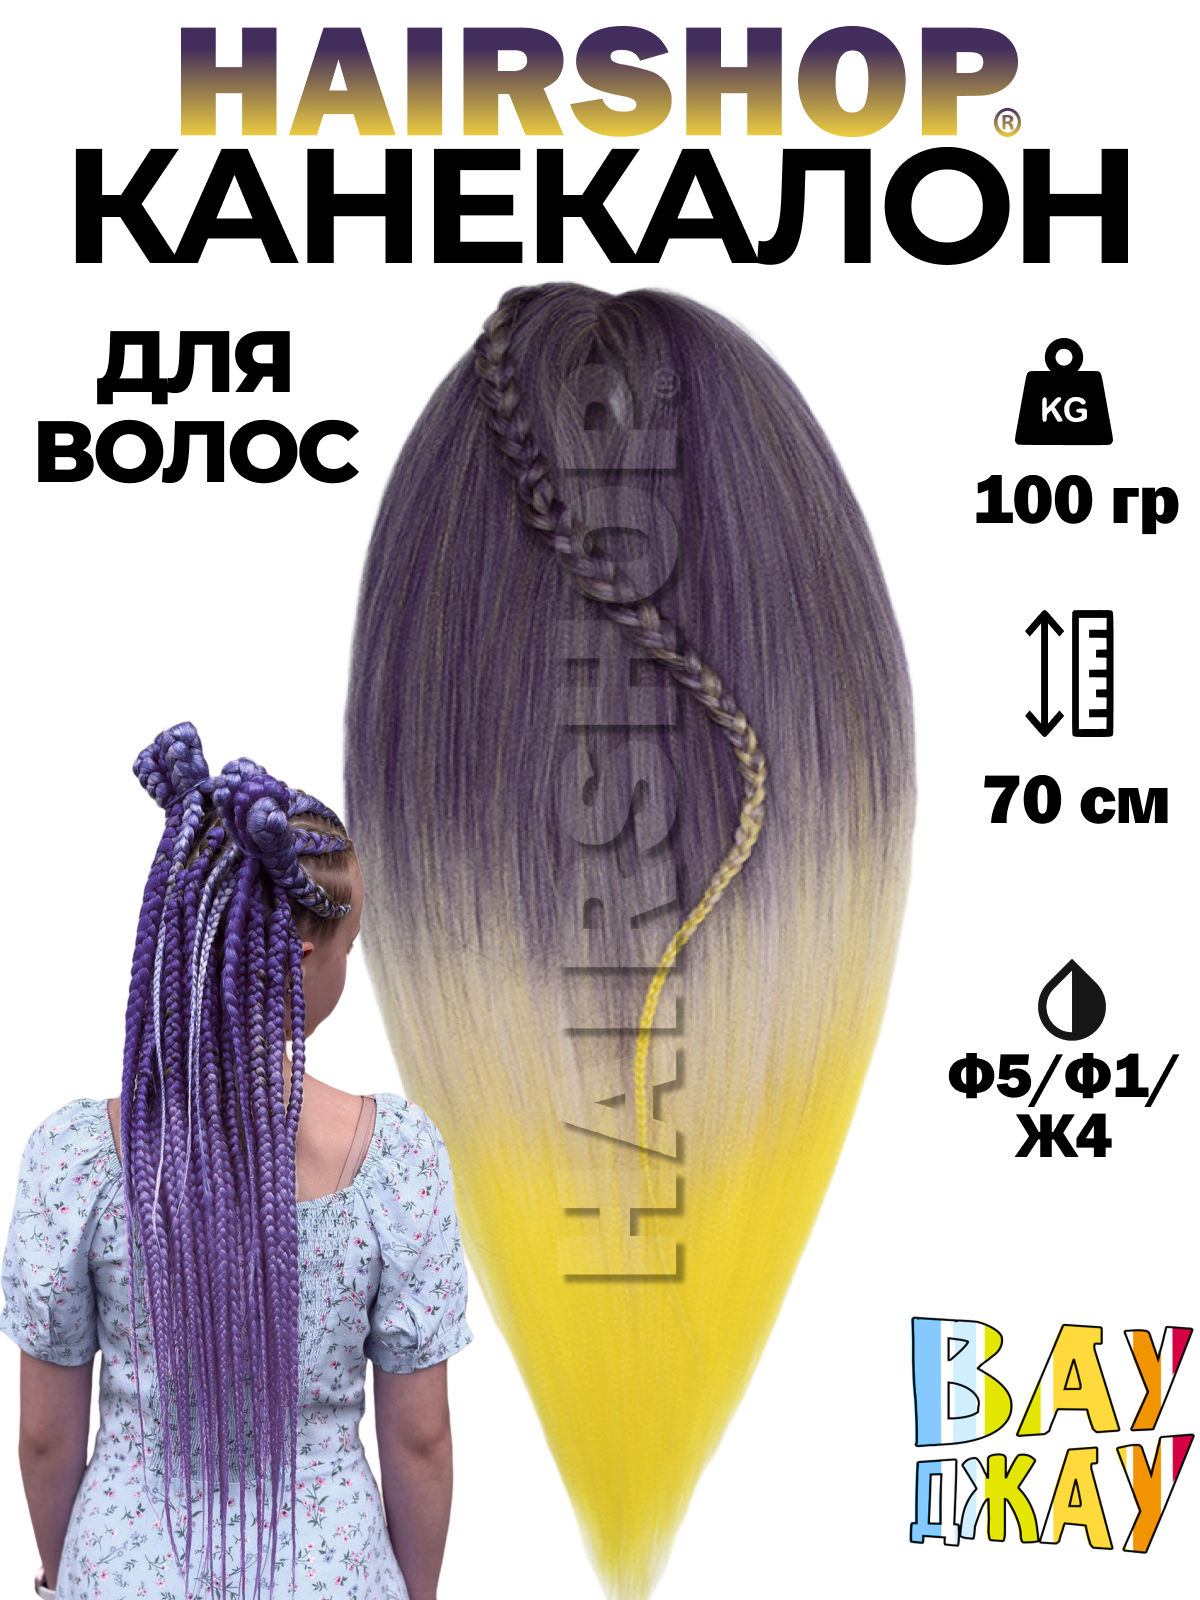 Канекалон HAIRSHOP Вау Джау Ф5-Ф1-Ж4 1,3м 100г Фиолетово-баклажановый, Фиолетовый, Желтый карнавальный плащ детский атлас фиолетовый длина 85 см